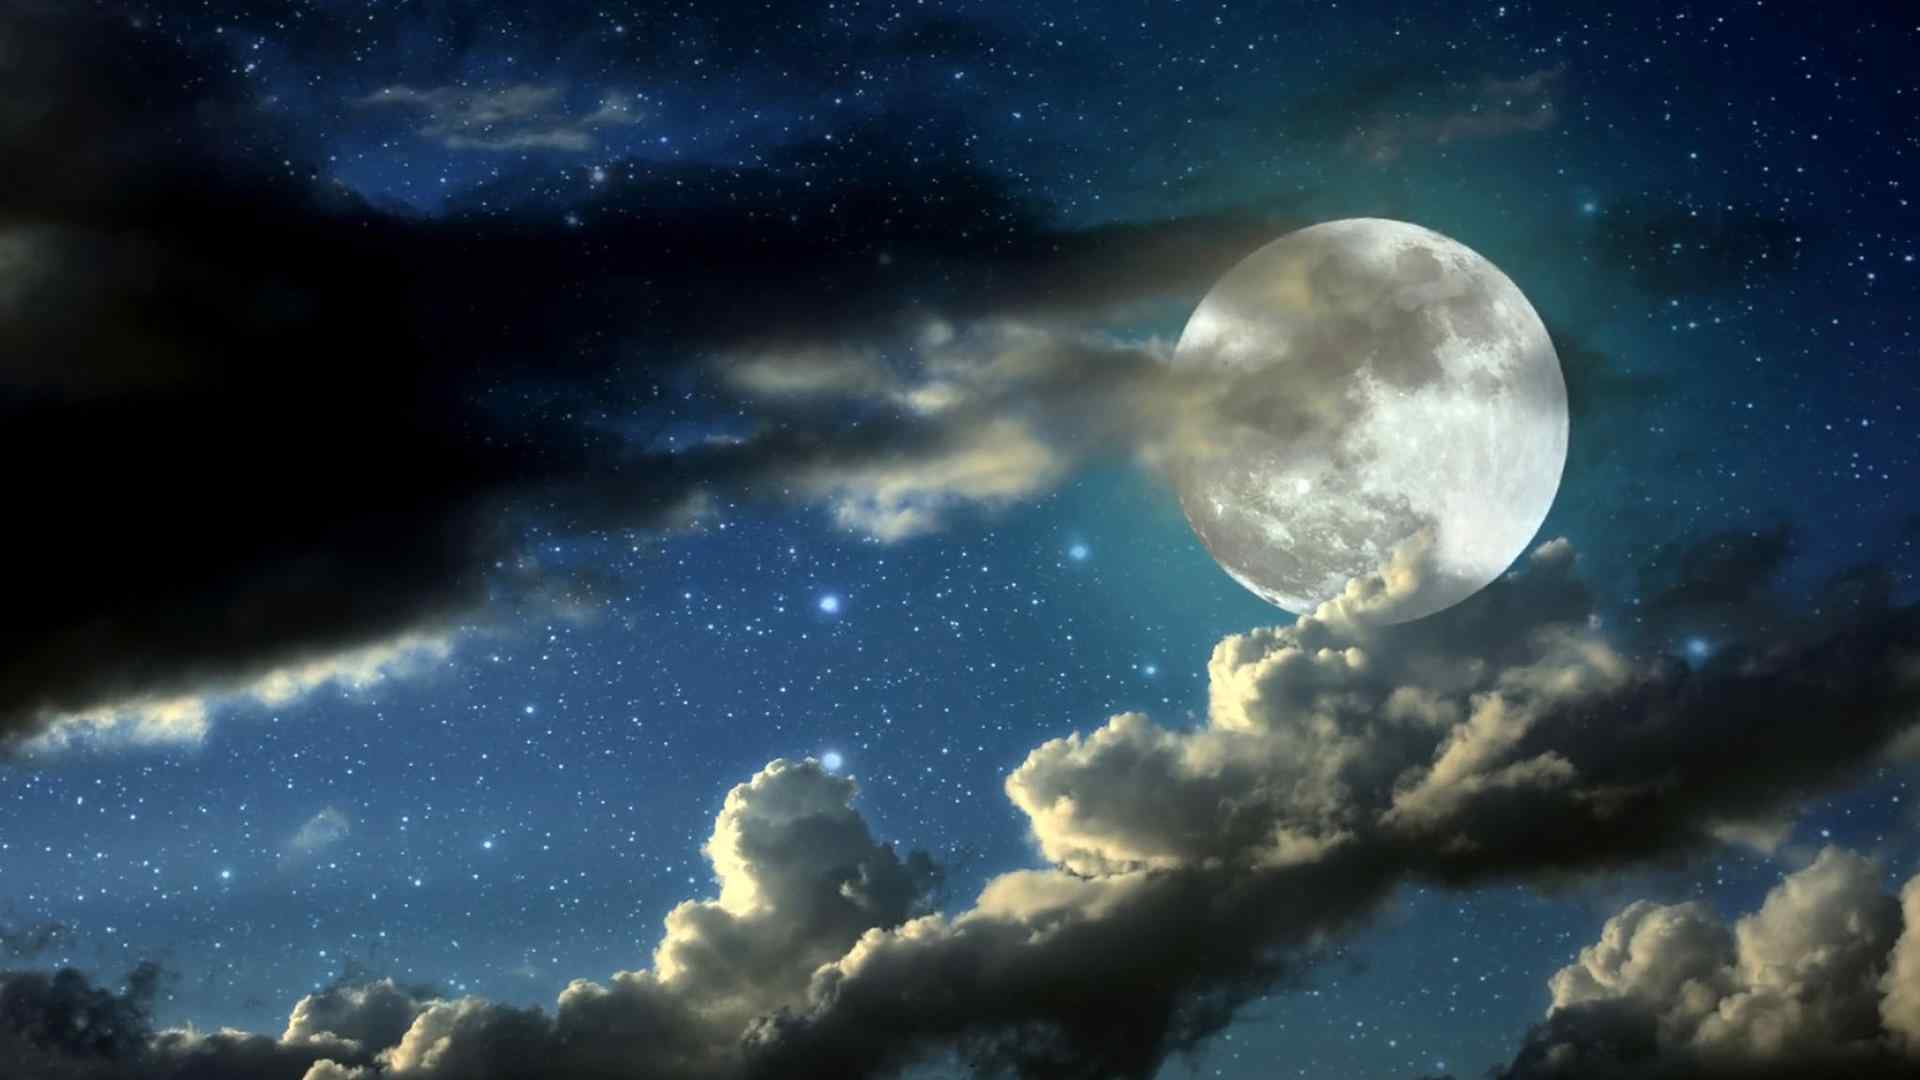 壁纸 风景壁纸 > 唯美星空中的月亮图片